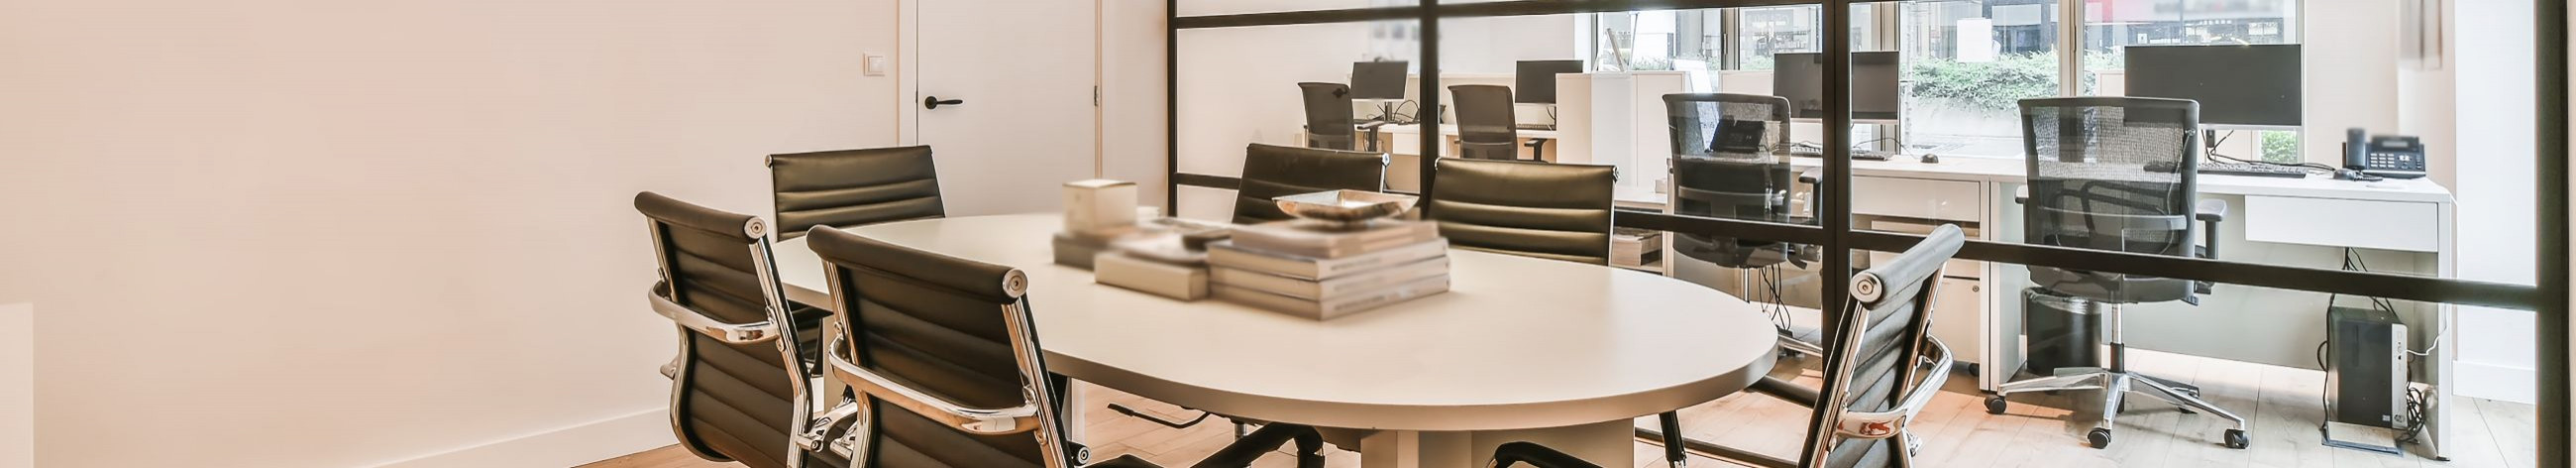 Kompakt Kontorimööbel pakub kontorimööblit ja büroomööblit igale maitsele. Meie kontorimööbel on lihtsa ja ajatu disainiga. Samas oleme erilist tähelepanu pööranud kontorimööbli kvaliteedile ja pikaealisusele.